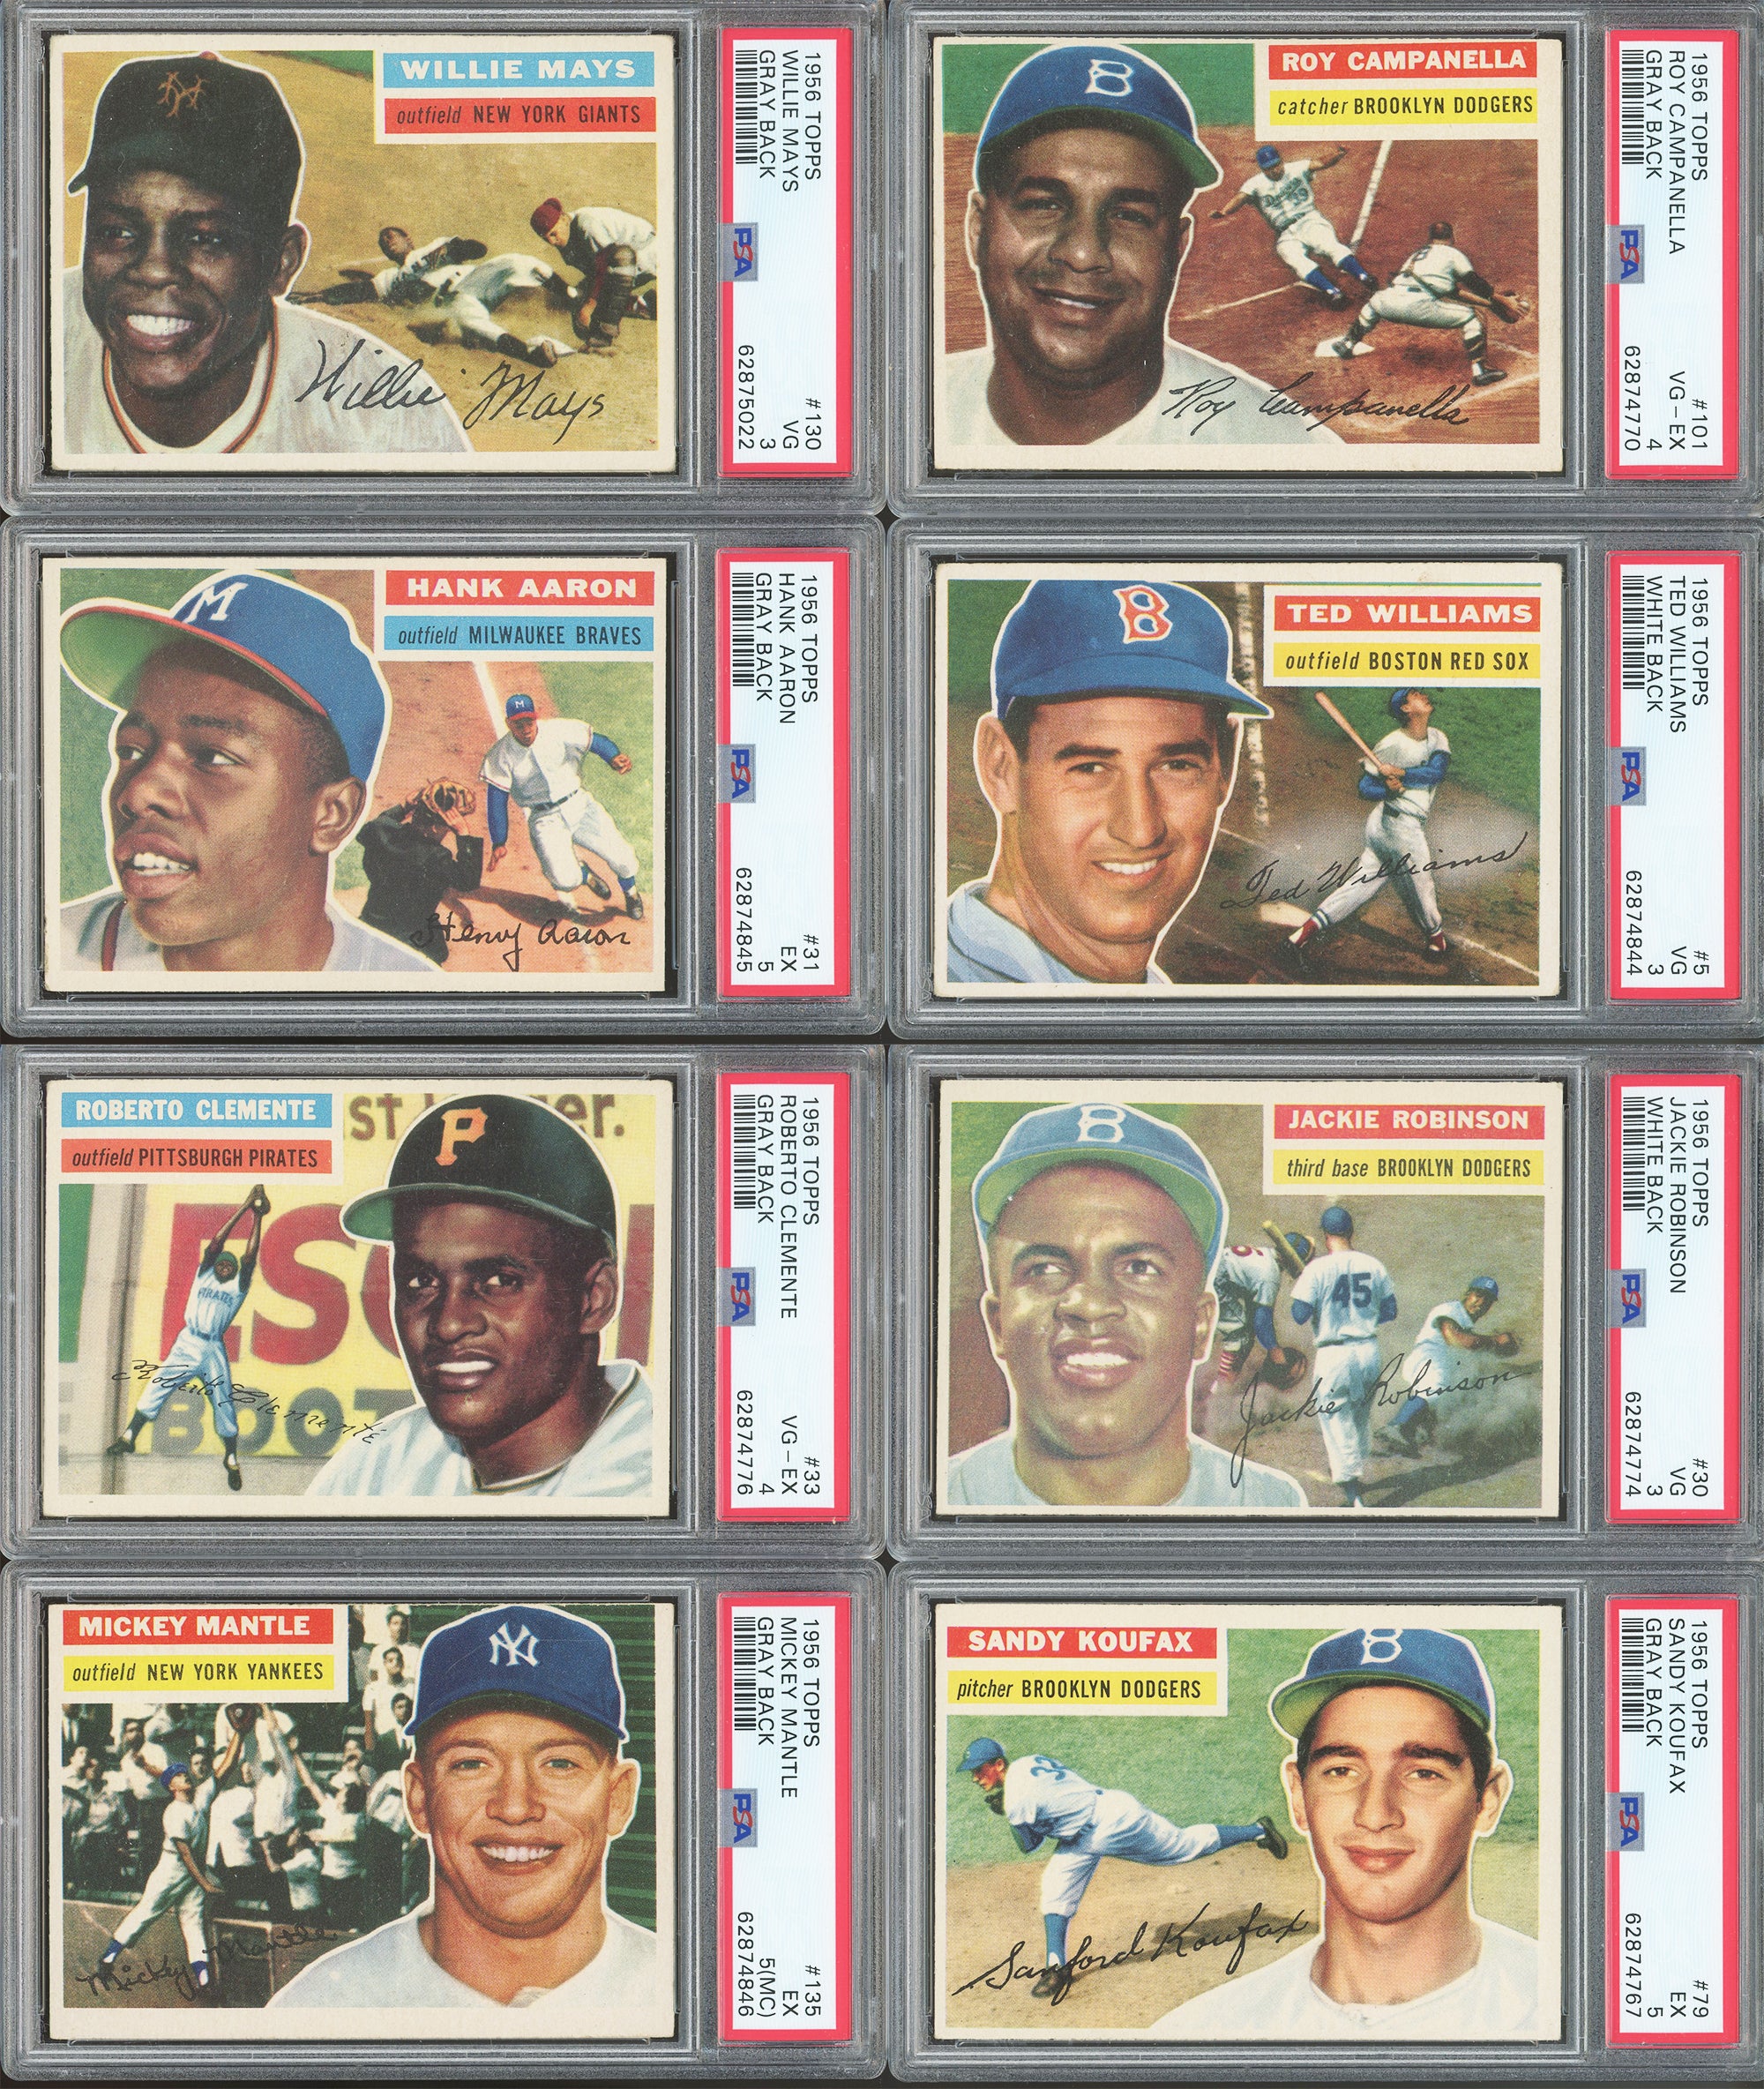 1956 Topps #31 Hank Aaron Baseball Card